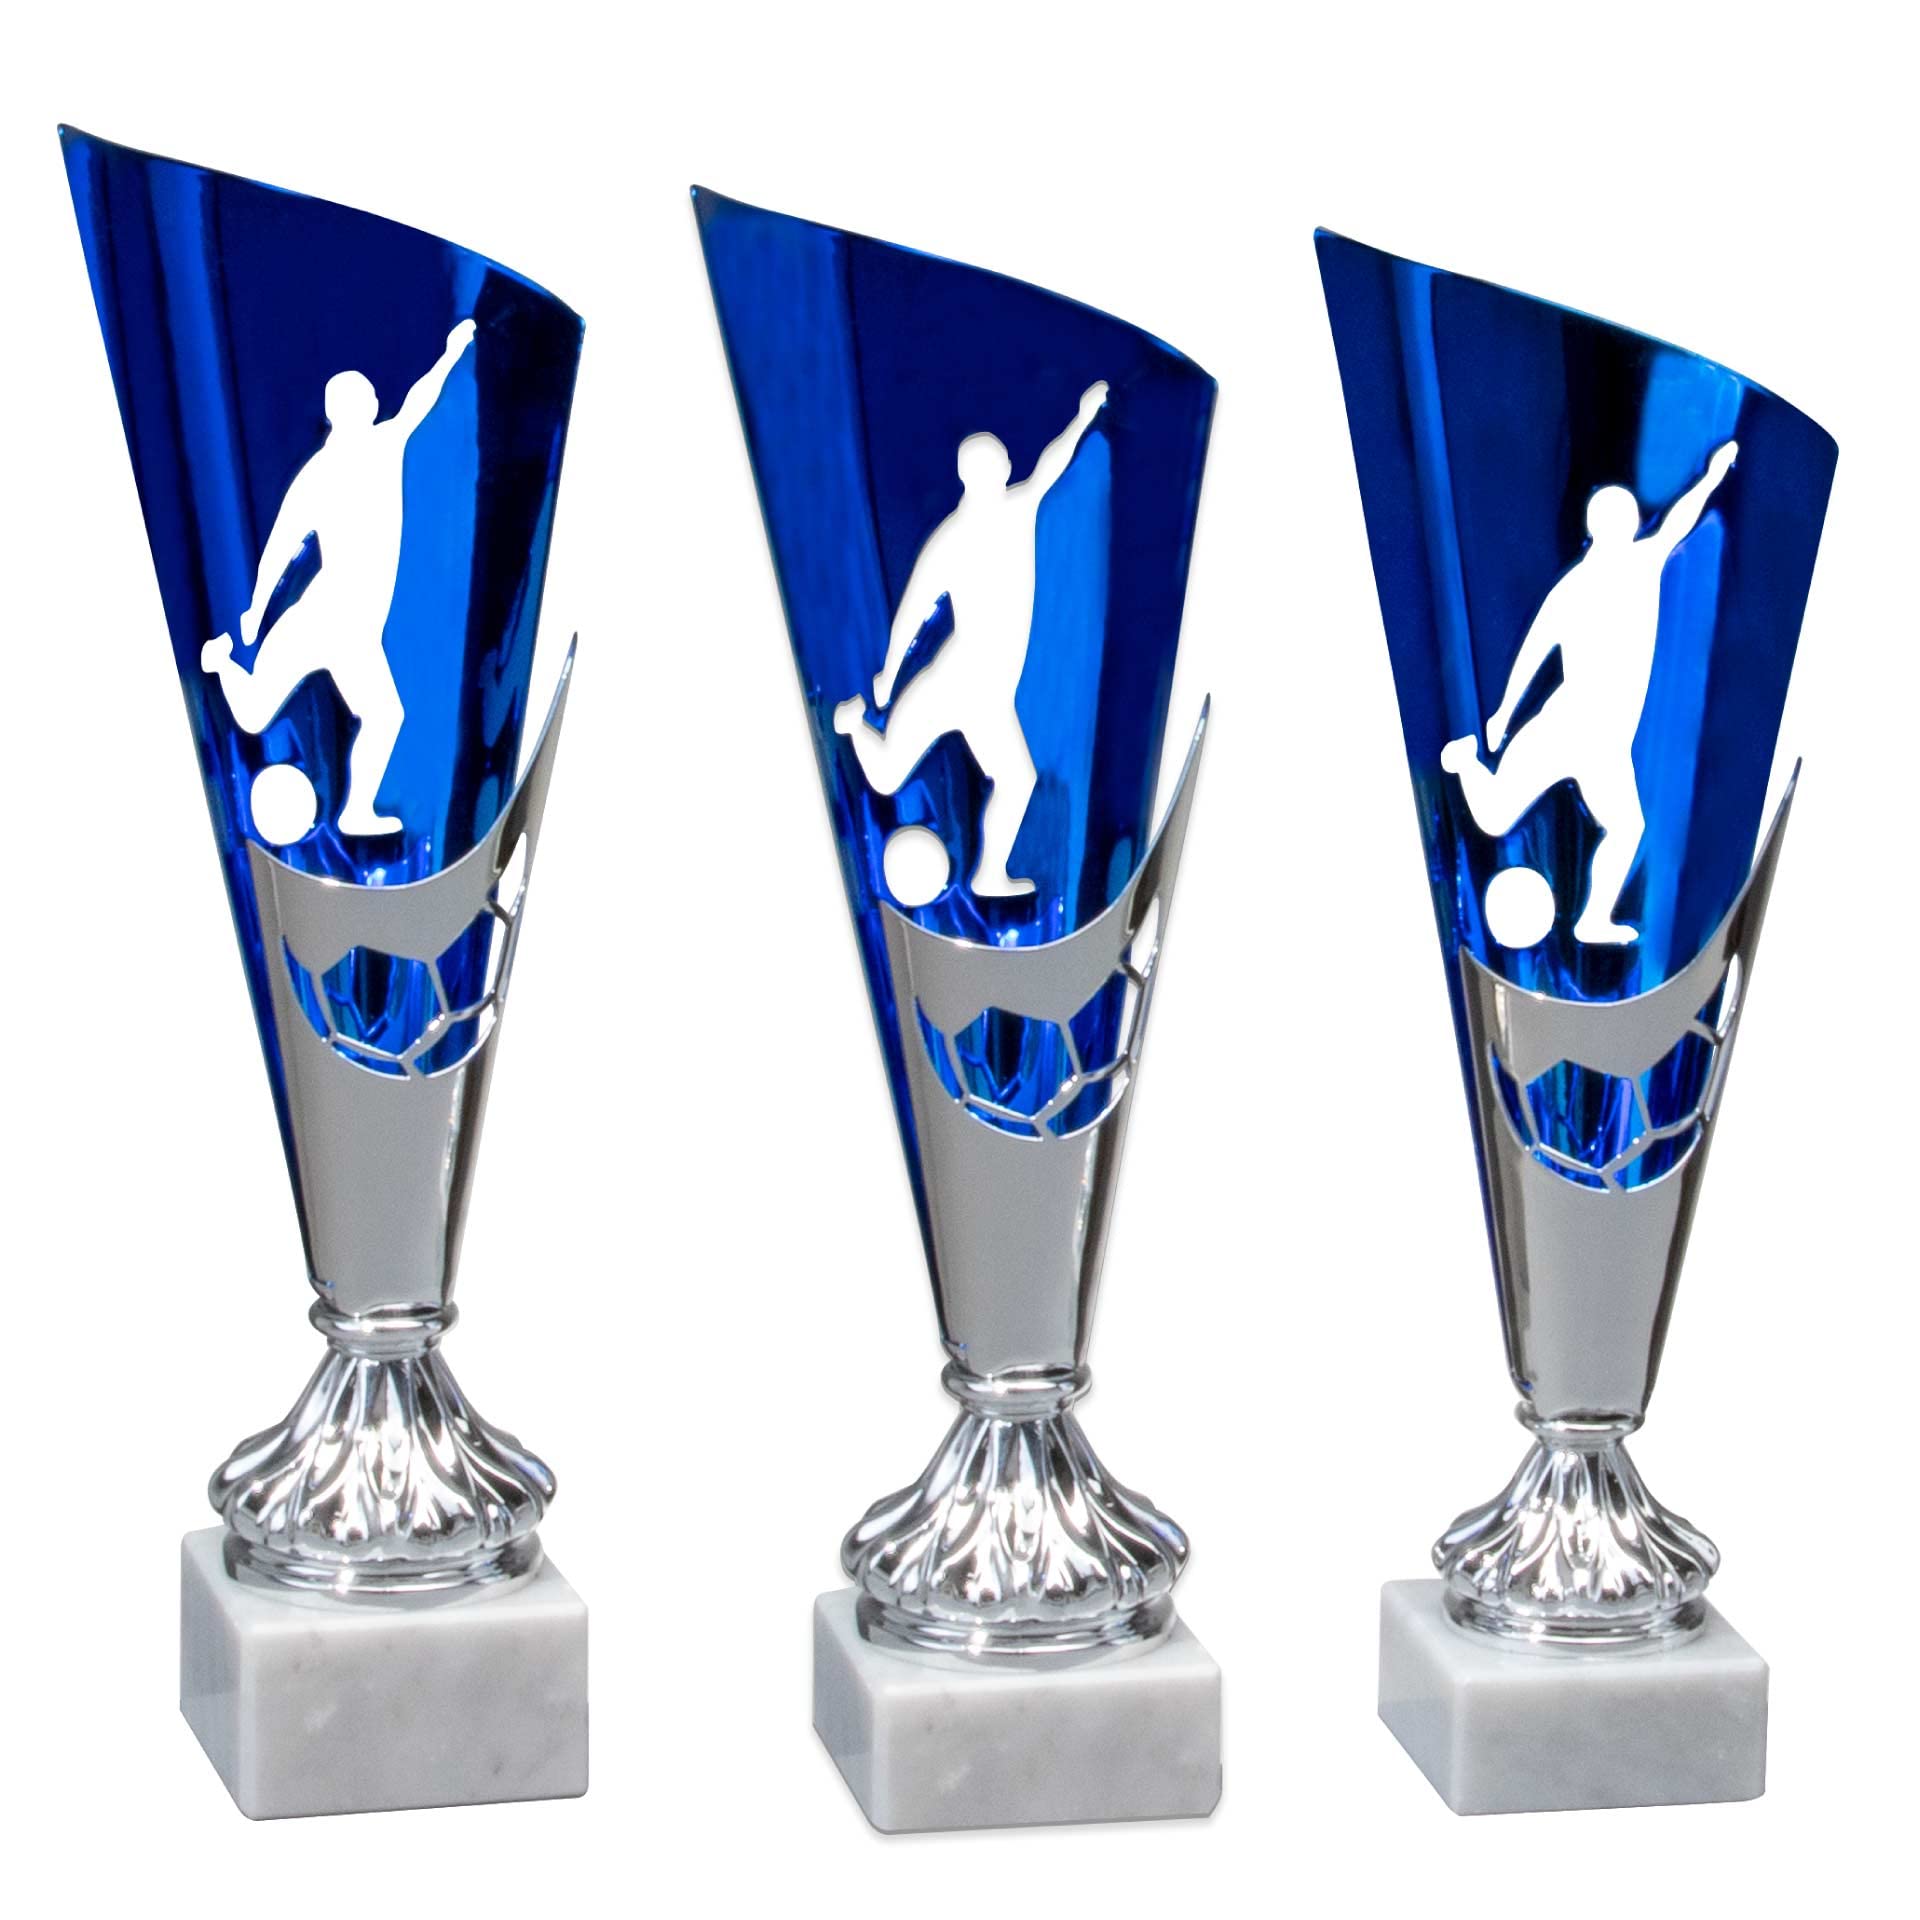 eberin · Fußball Pokal groß mit Gravur · Marmorsockel · 3er Set · personalisierbar · für Torschützen · Tippkicker · Soccer · Weltmeister · Fußballvereine ·Fussball · Hallenturnier (Höhe: 310 mm)